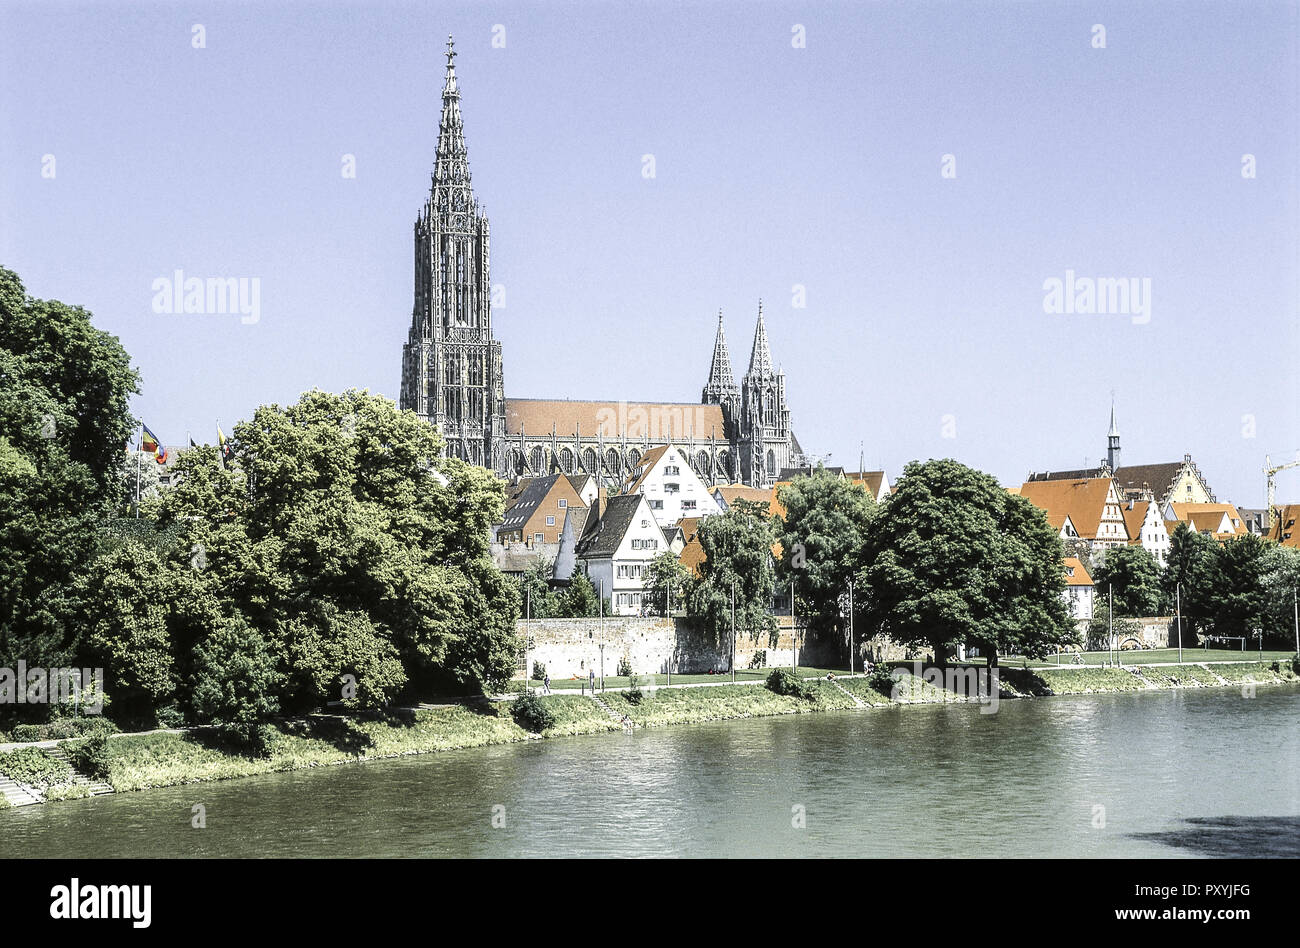 Ulm an der Donau, Muenster, Bade-Wurtemberg, Allemagne Banque D'Images